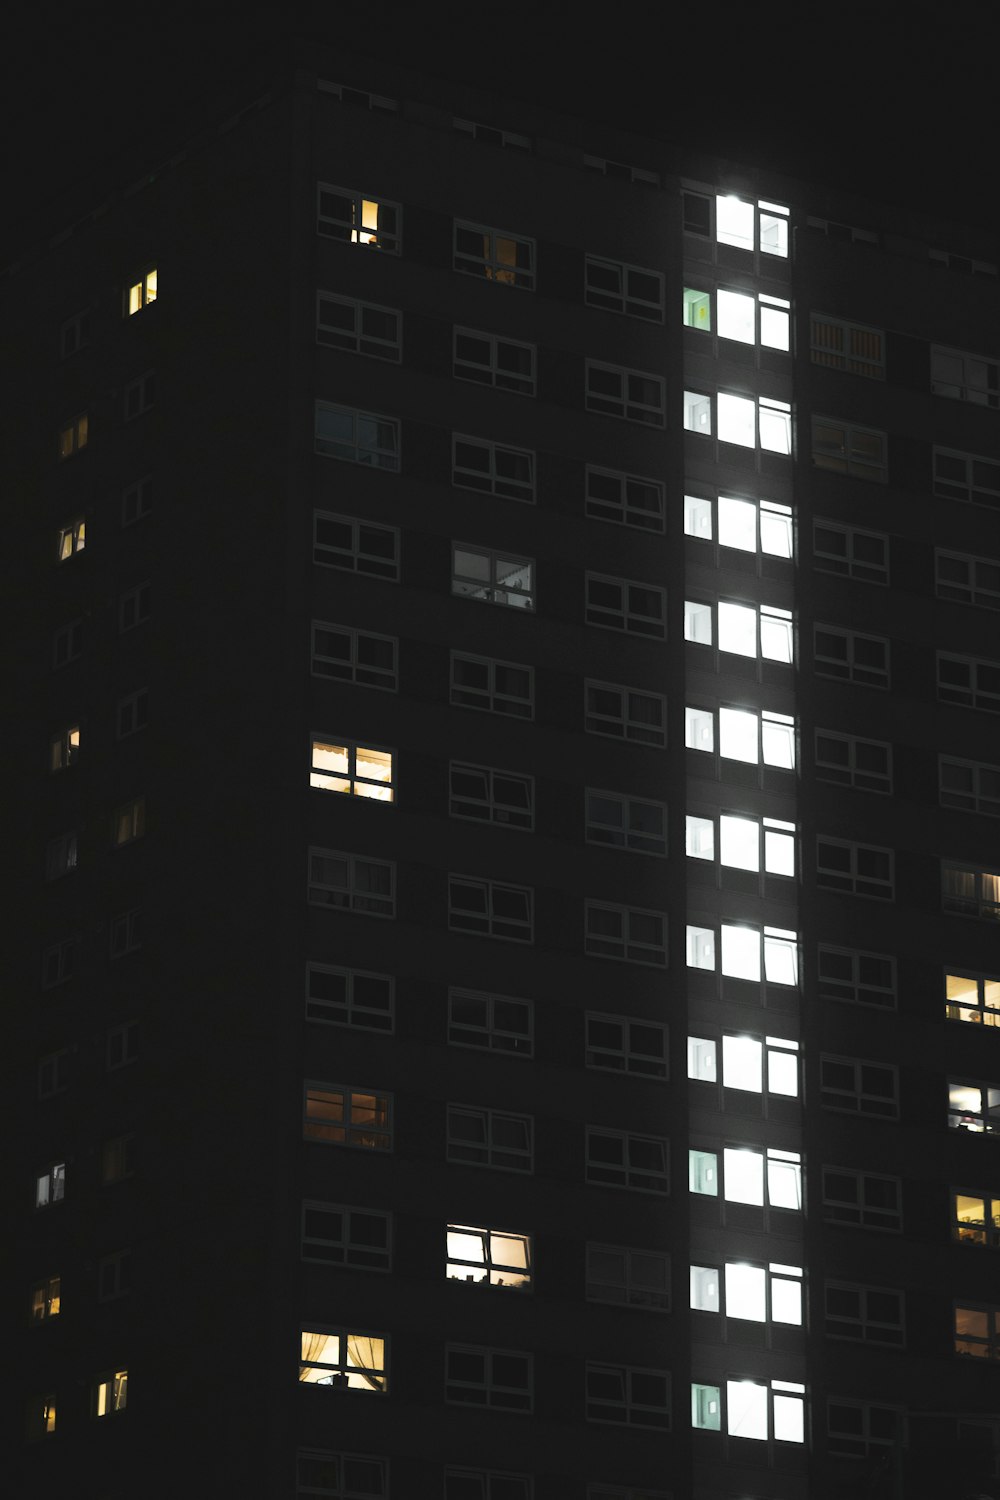 Un edificio alto con muchas ventanas iluminadas por la noche